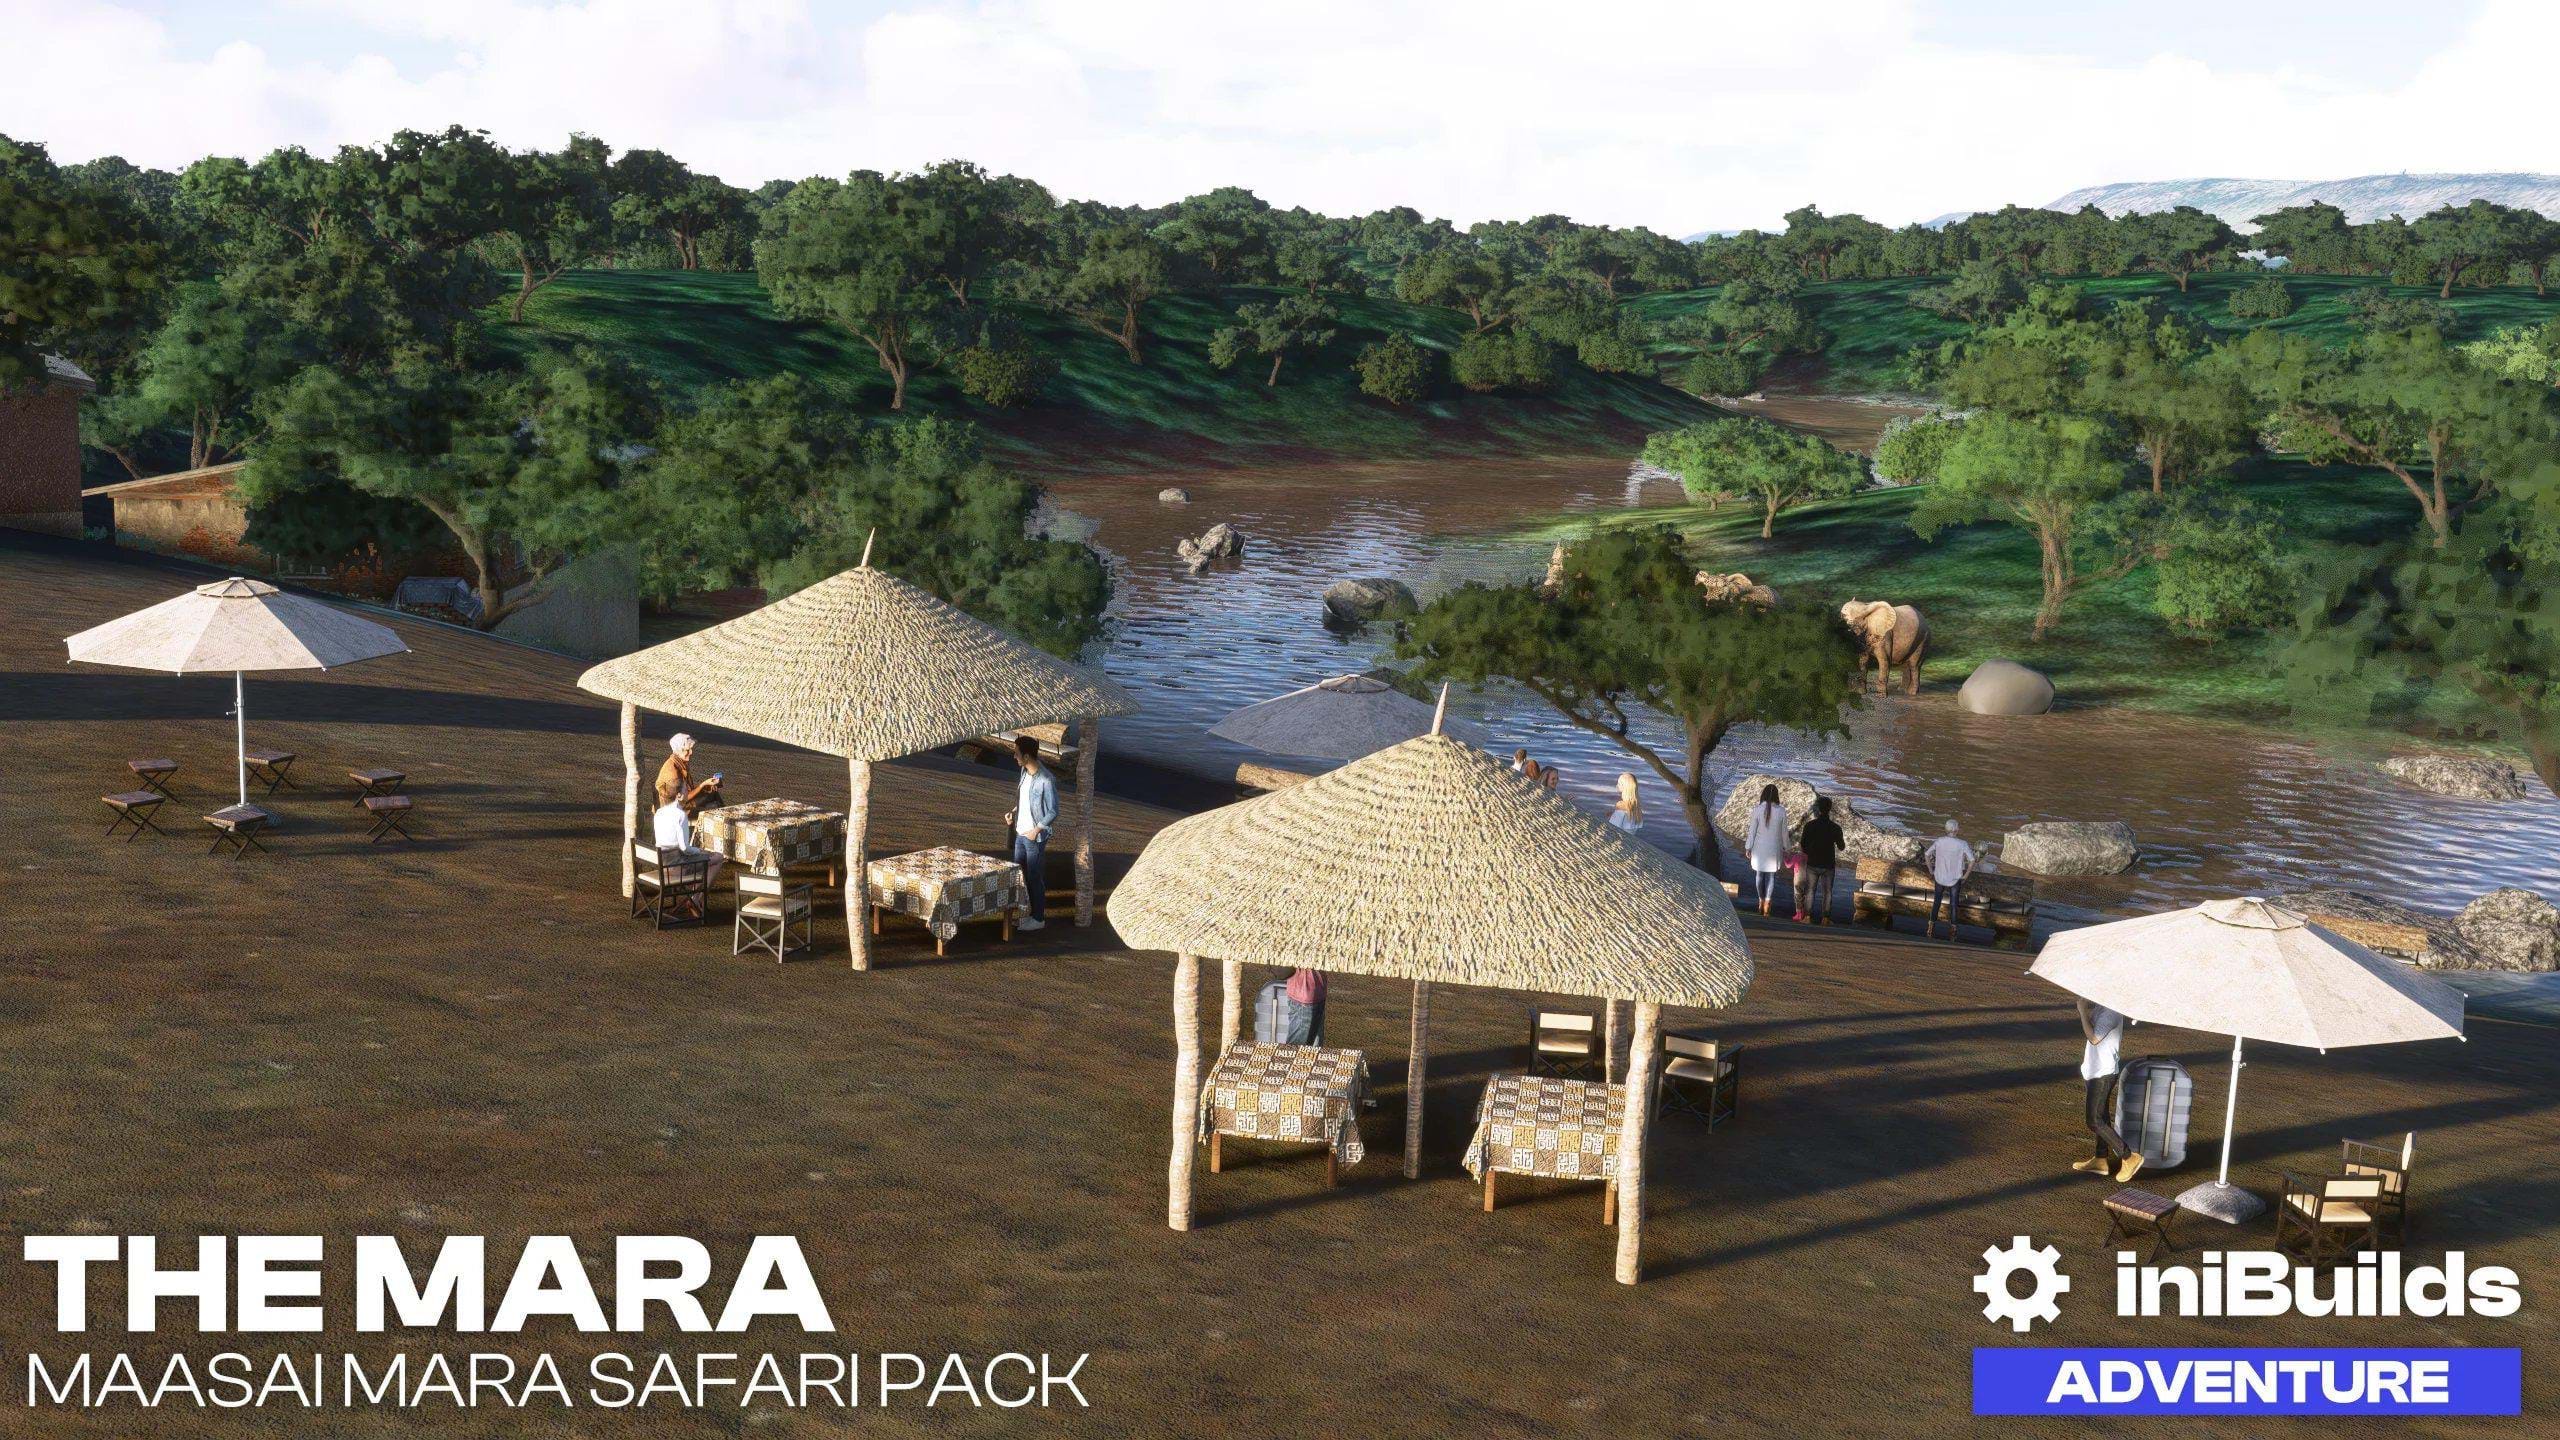 iniBuilds released free Maasai Mara Safari Pack scenery for MSFS